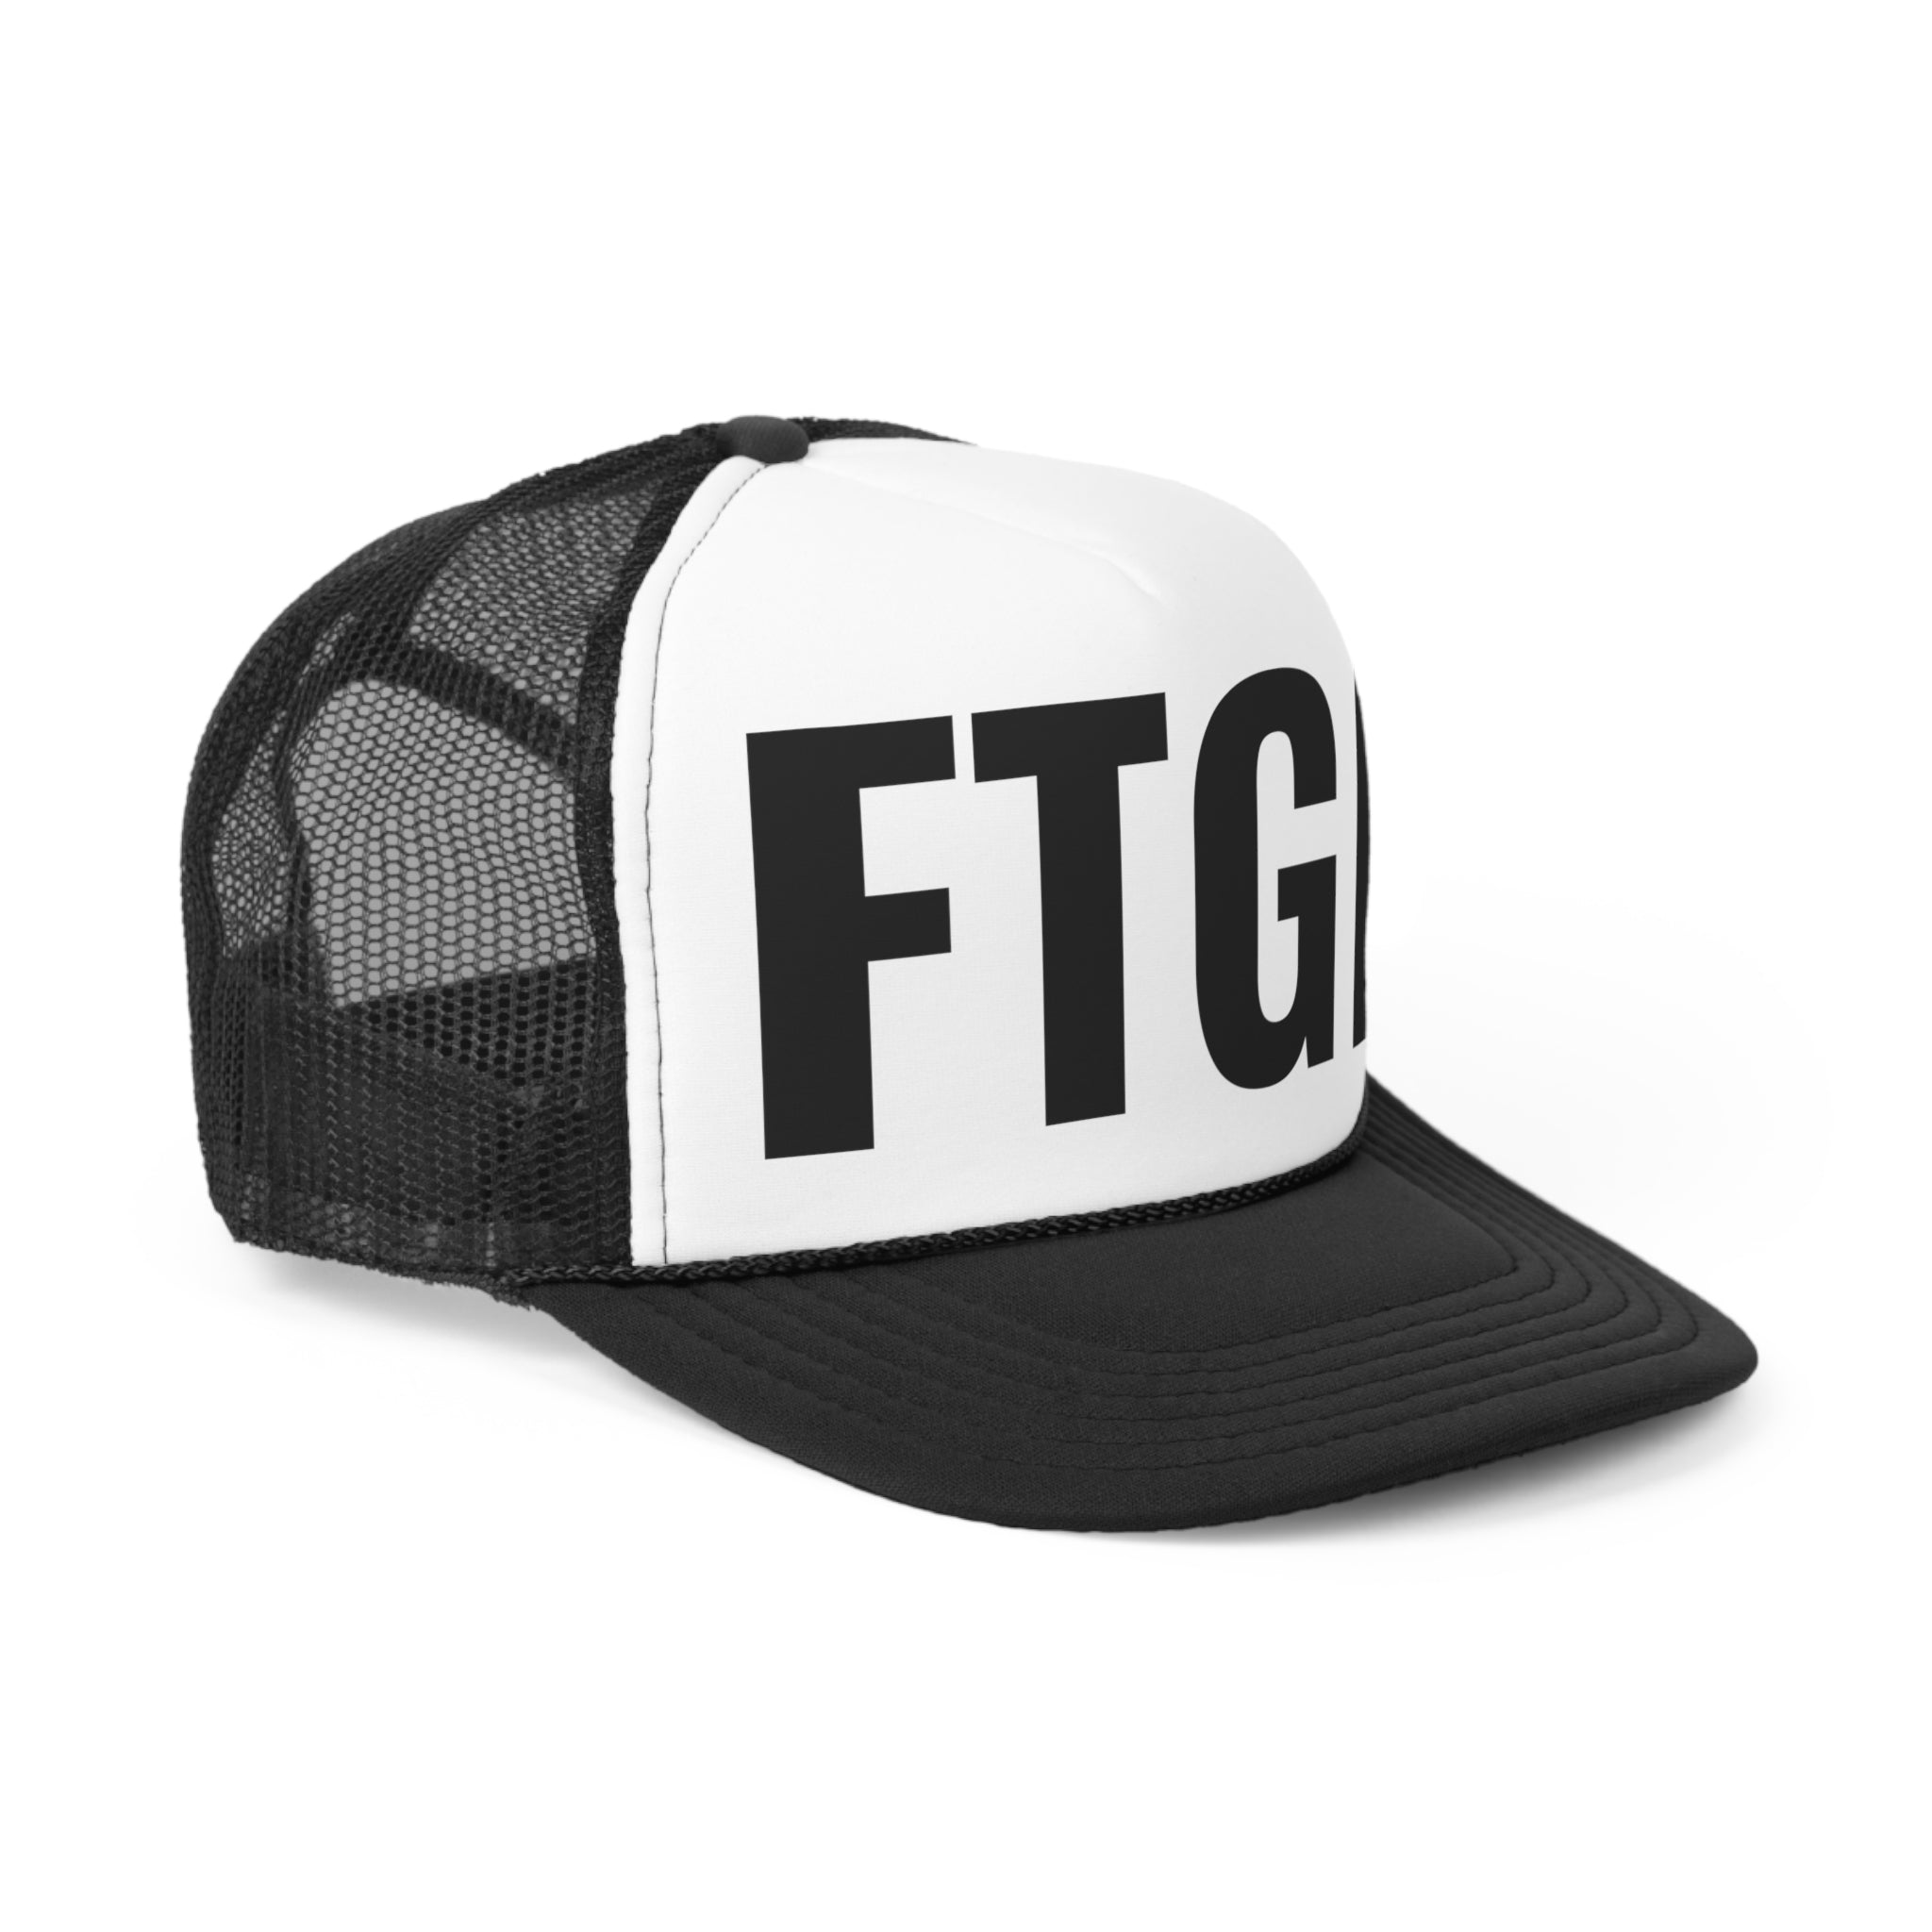 FTGP Trucker Cap